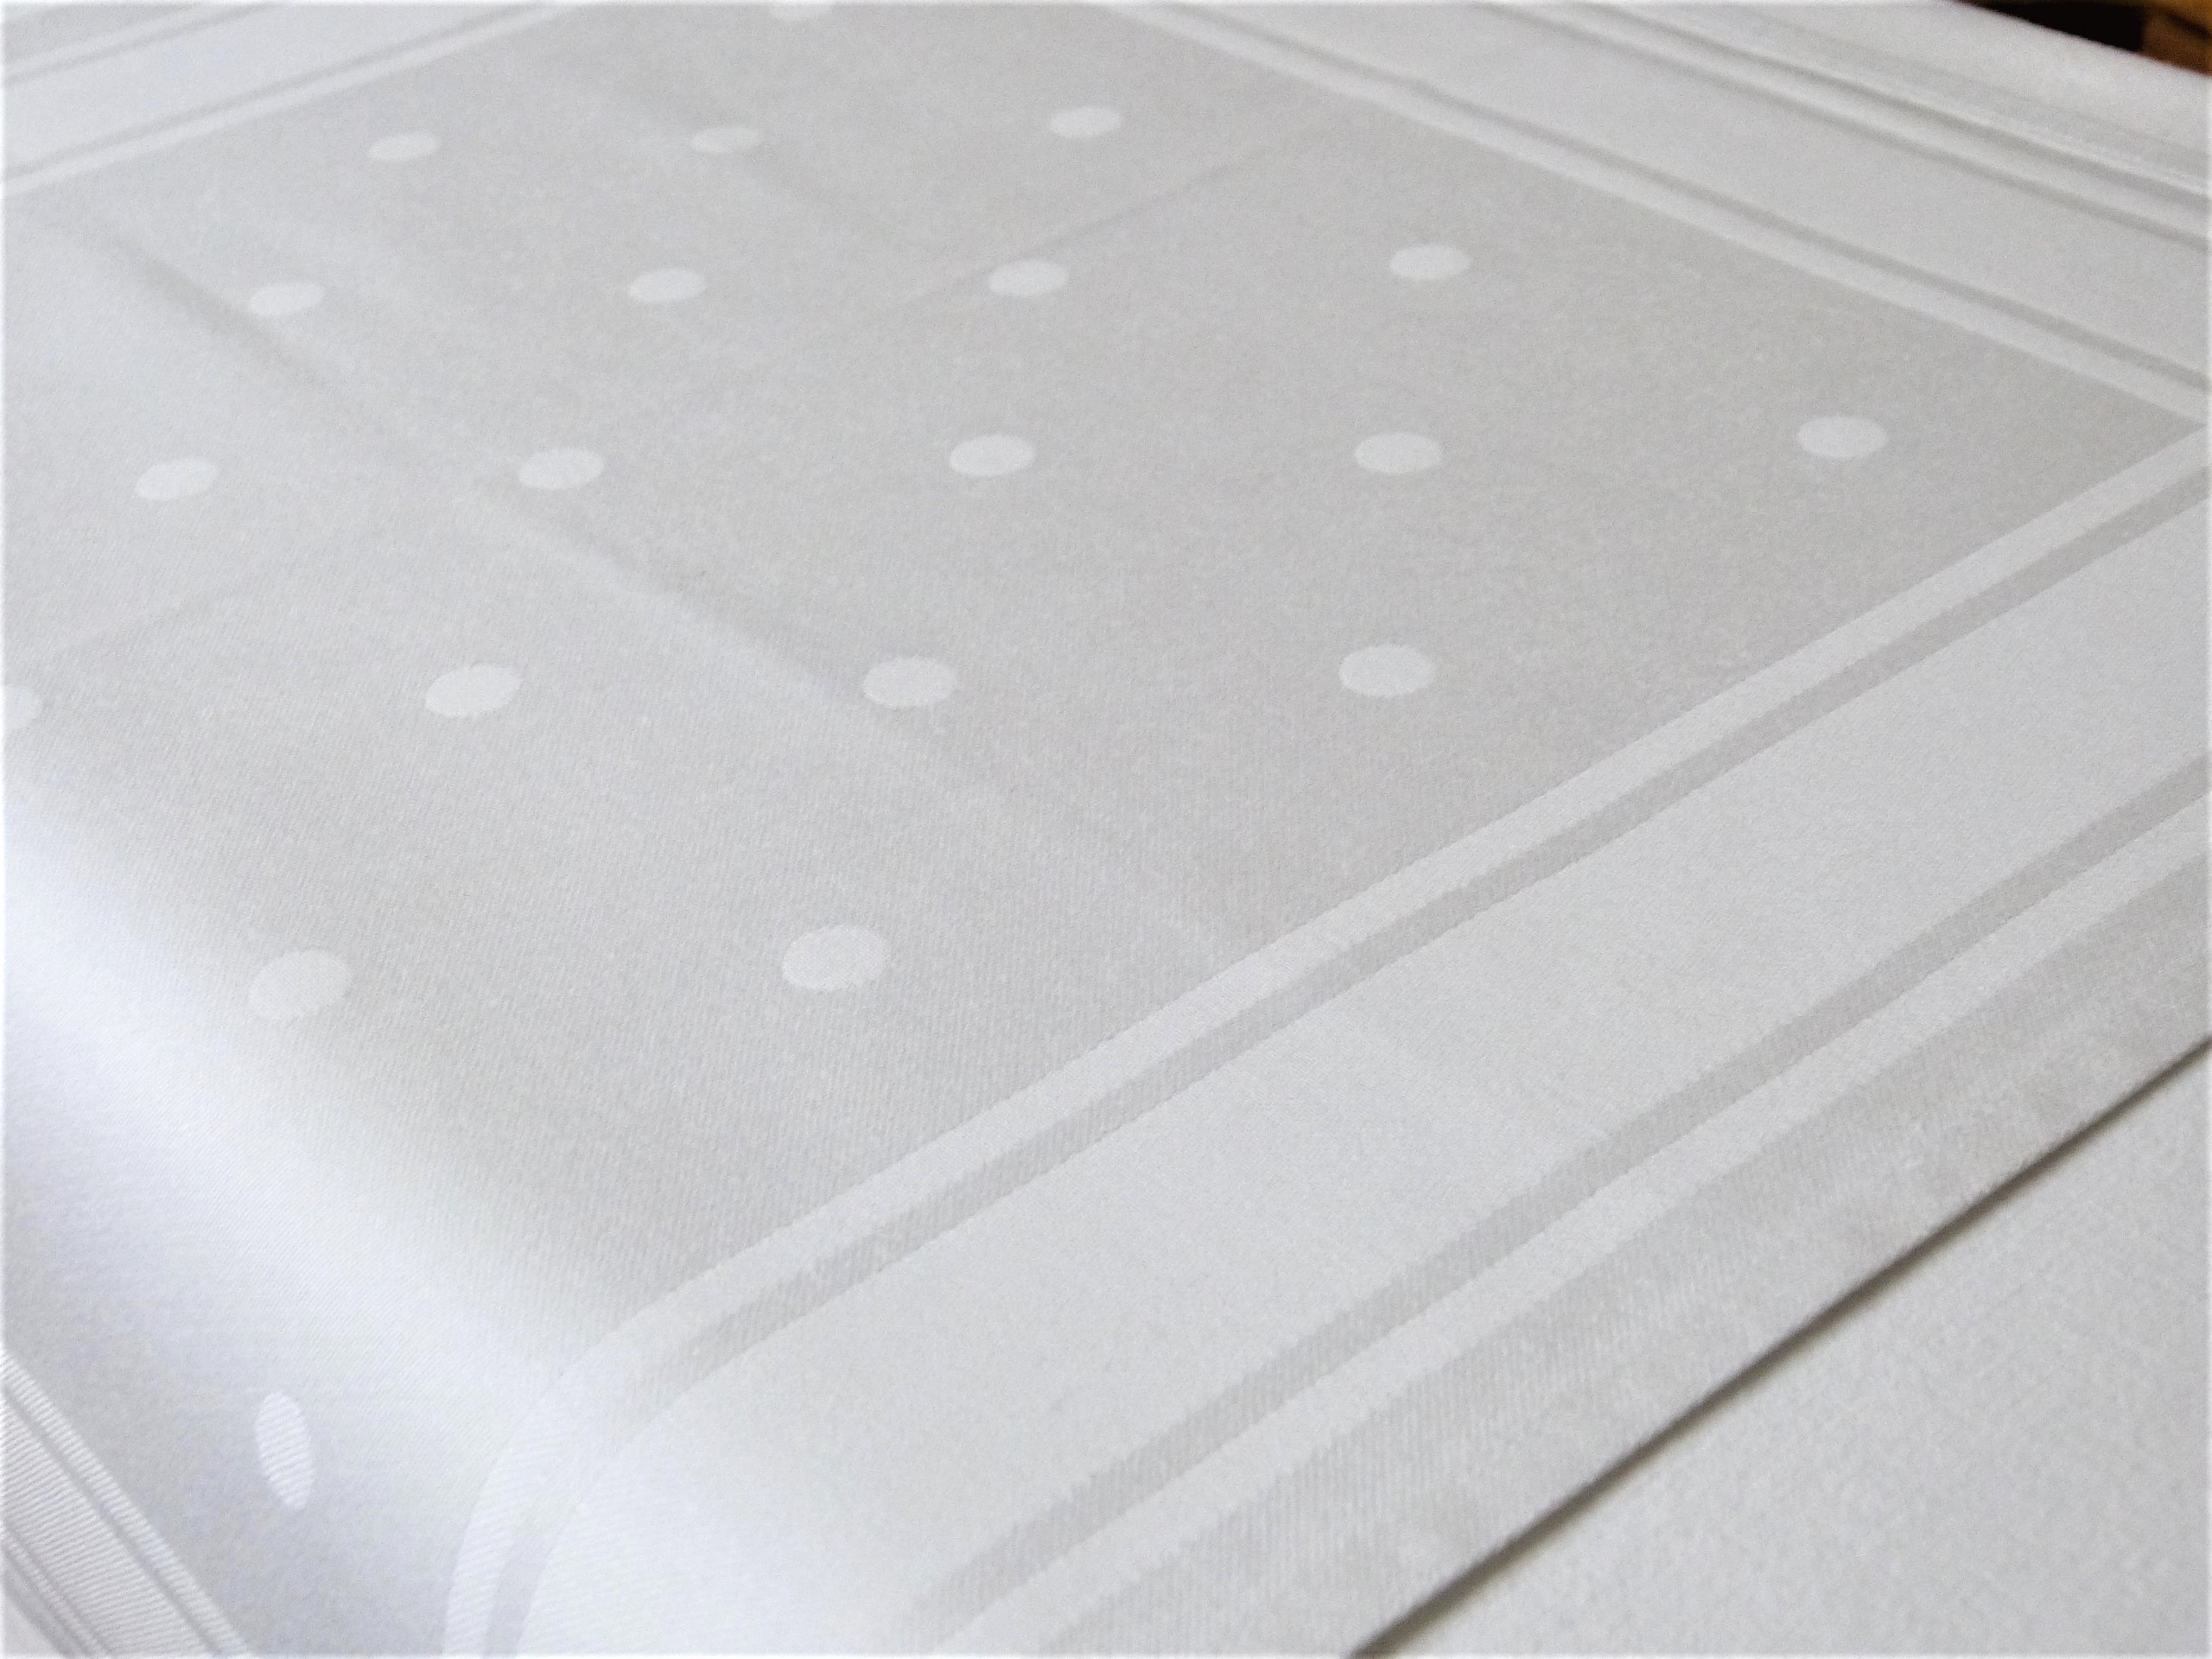 Antike Serviette Punkte Baumwolldamast seidig glänzend weiß 48x48 cm